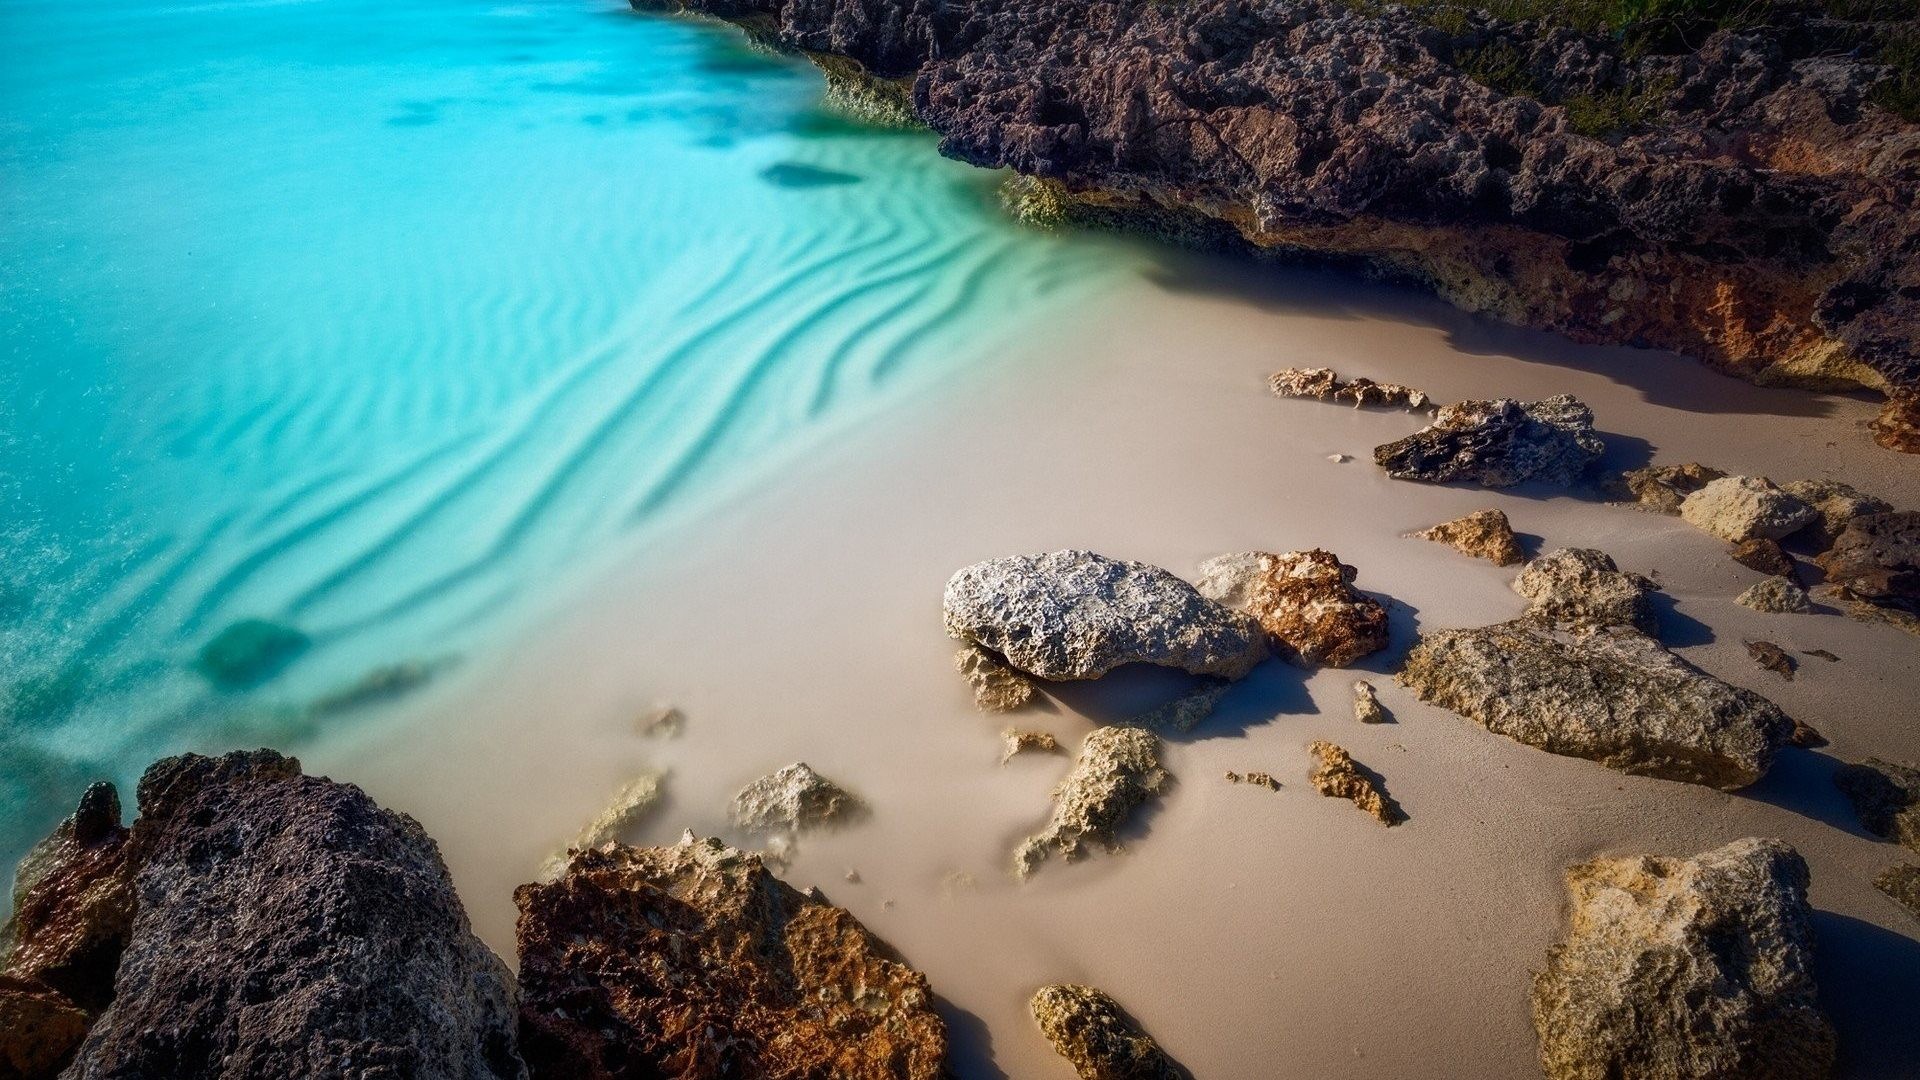 fond d'écran iphone stone island,plan d'eau,l'eau,la nature,roche,mer